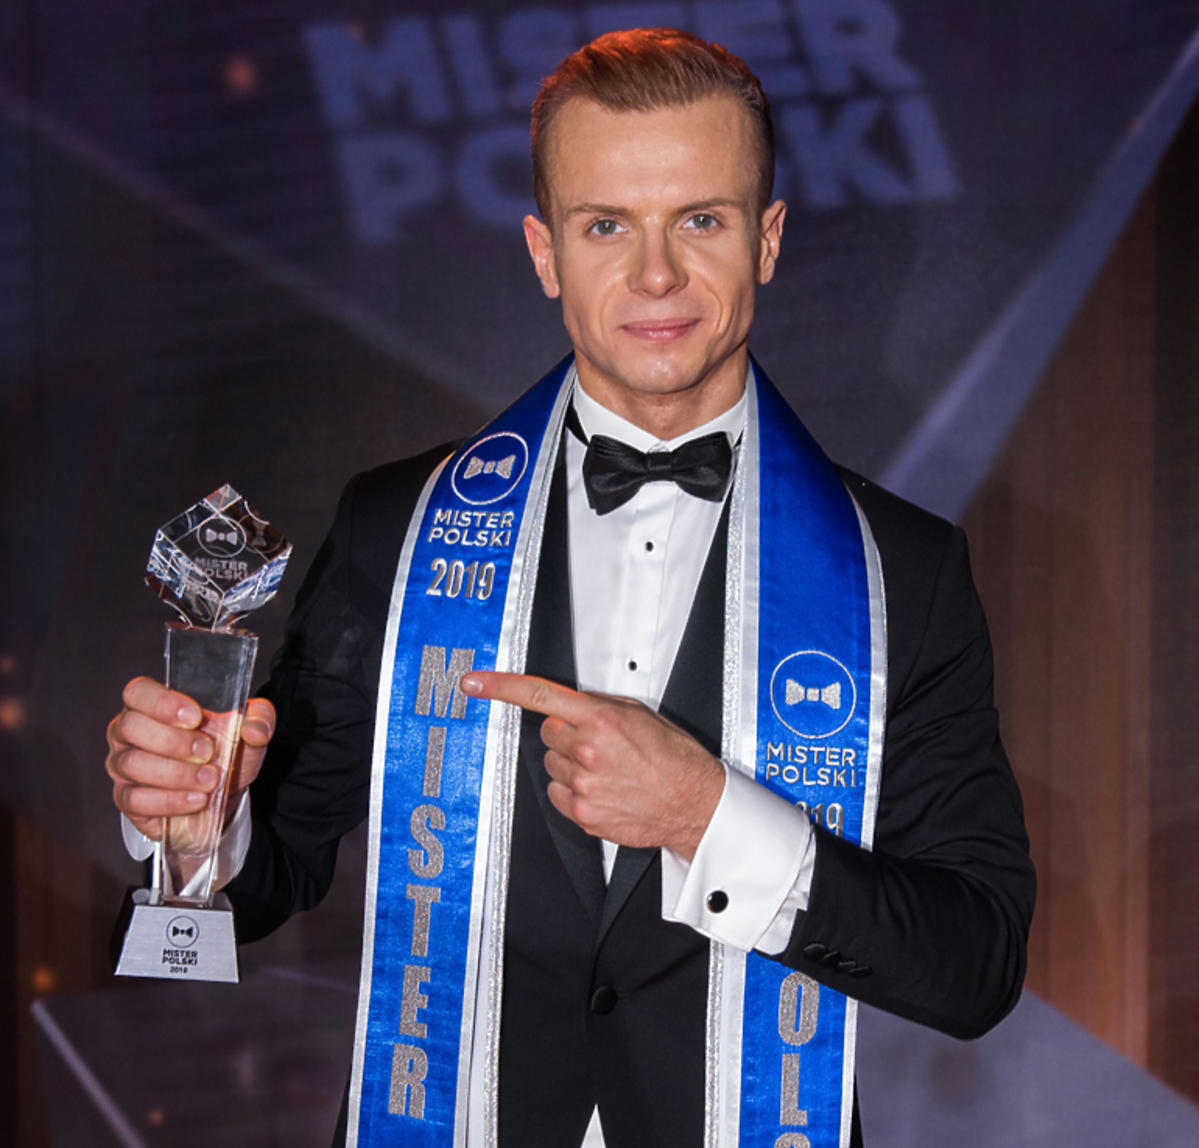 Mister Polski 2019 - co musisz o nim wiedzieć?